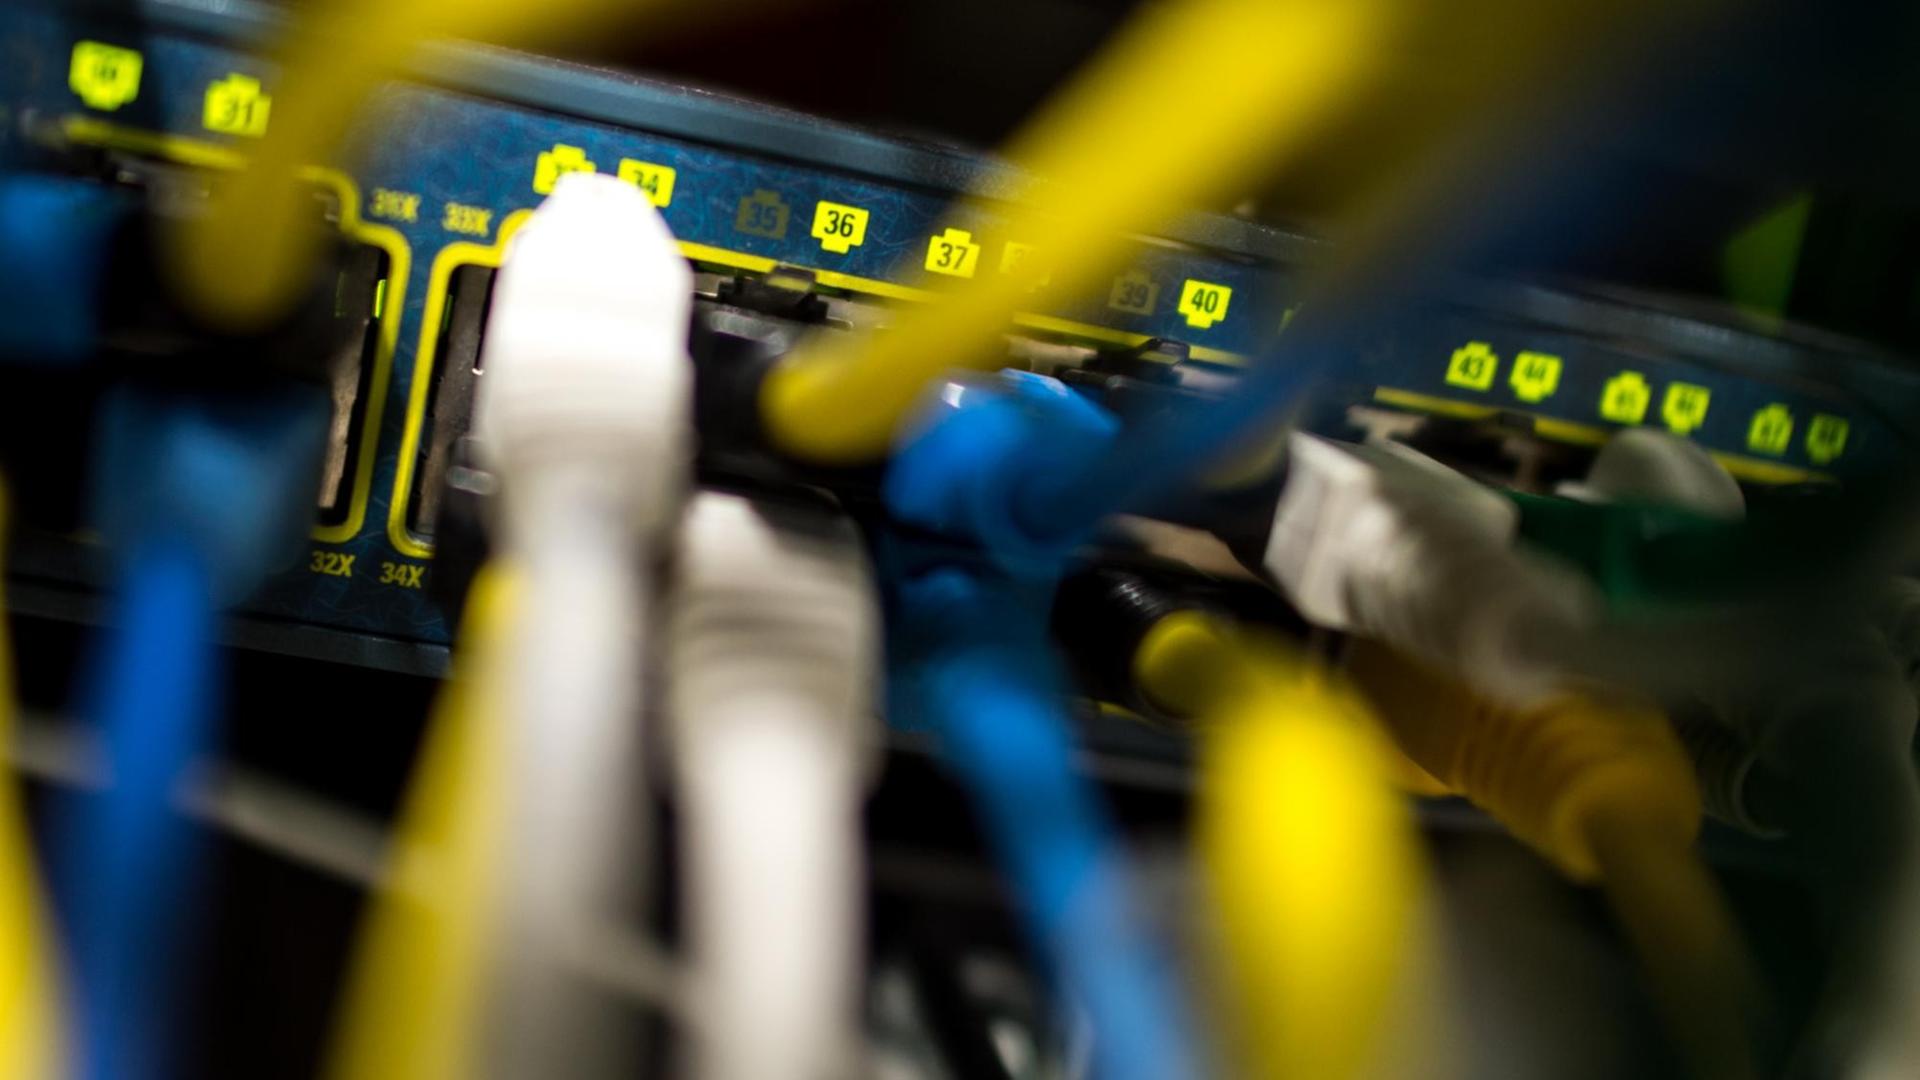 Netzwerkkabel stecken am 16.10.2015 in einem Serverraum in München (Bayern) in einem Switch